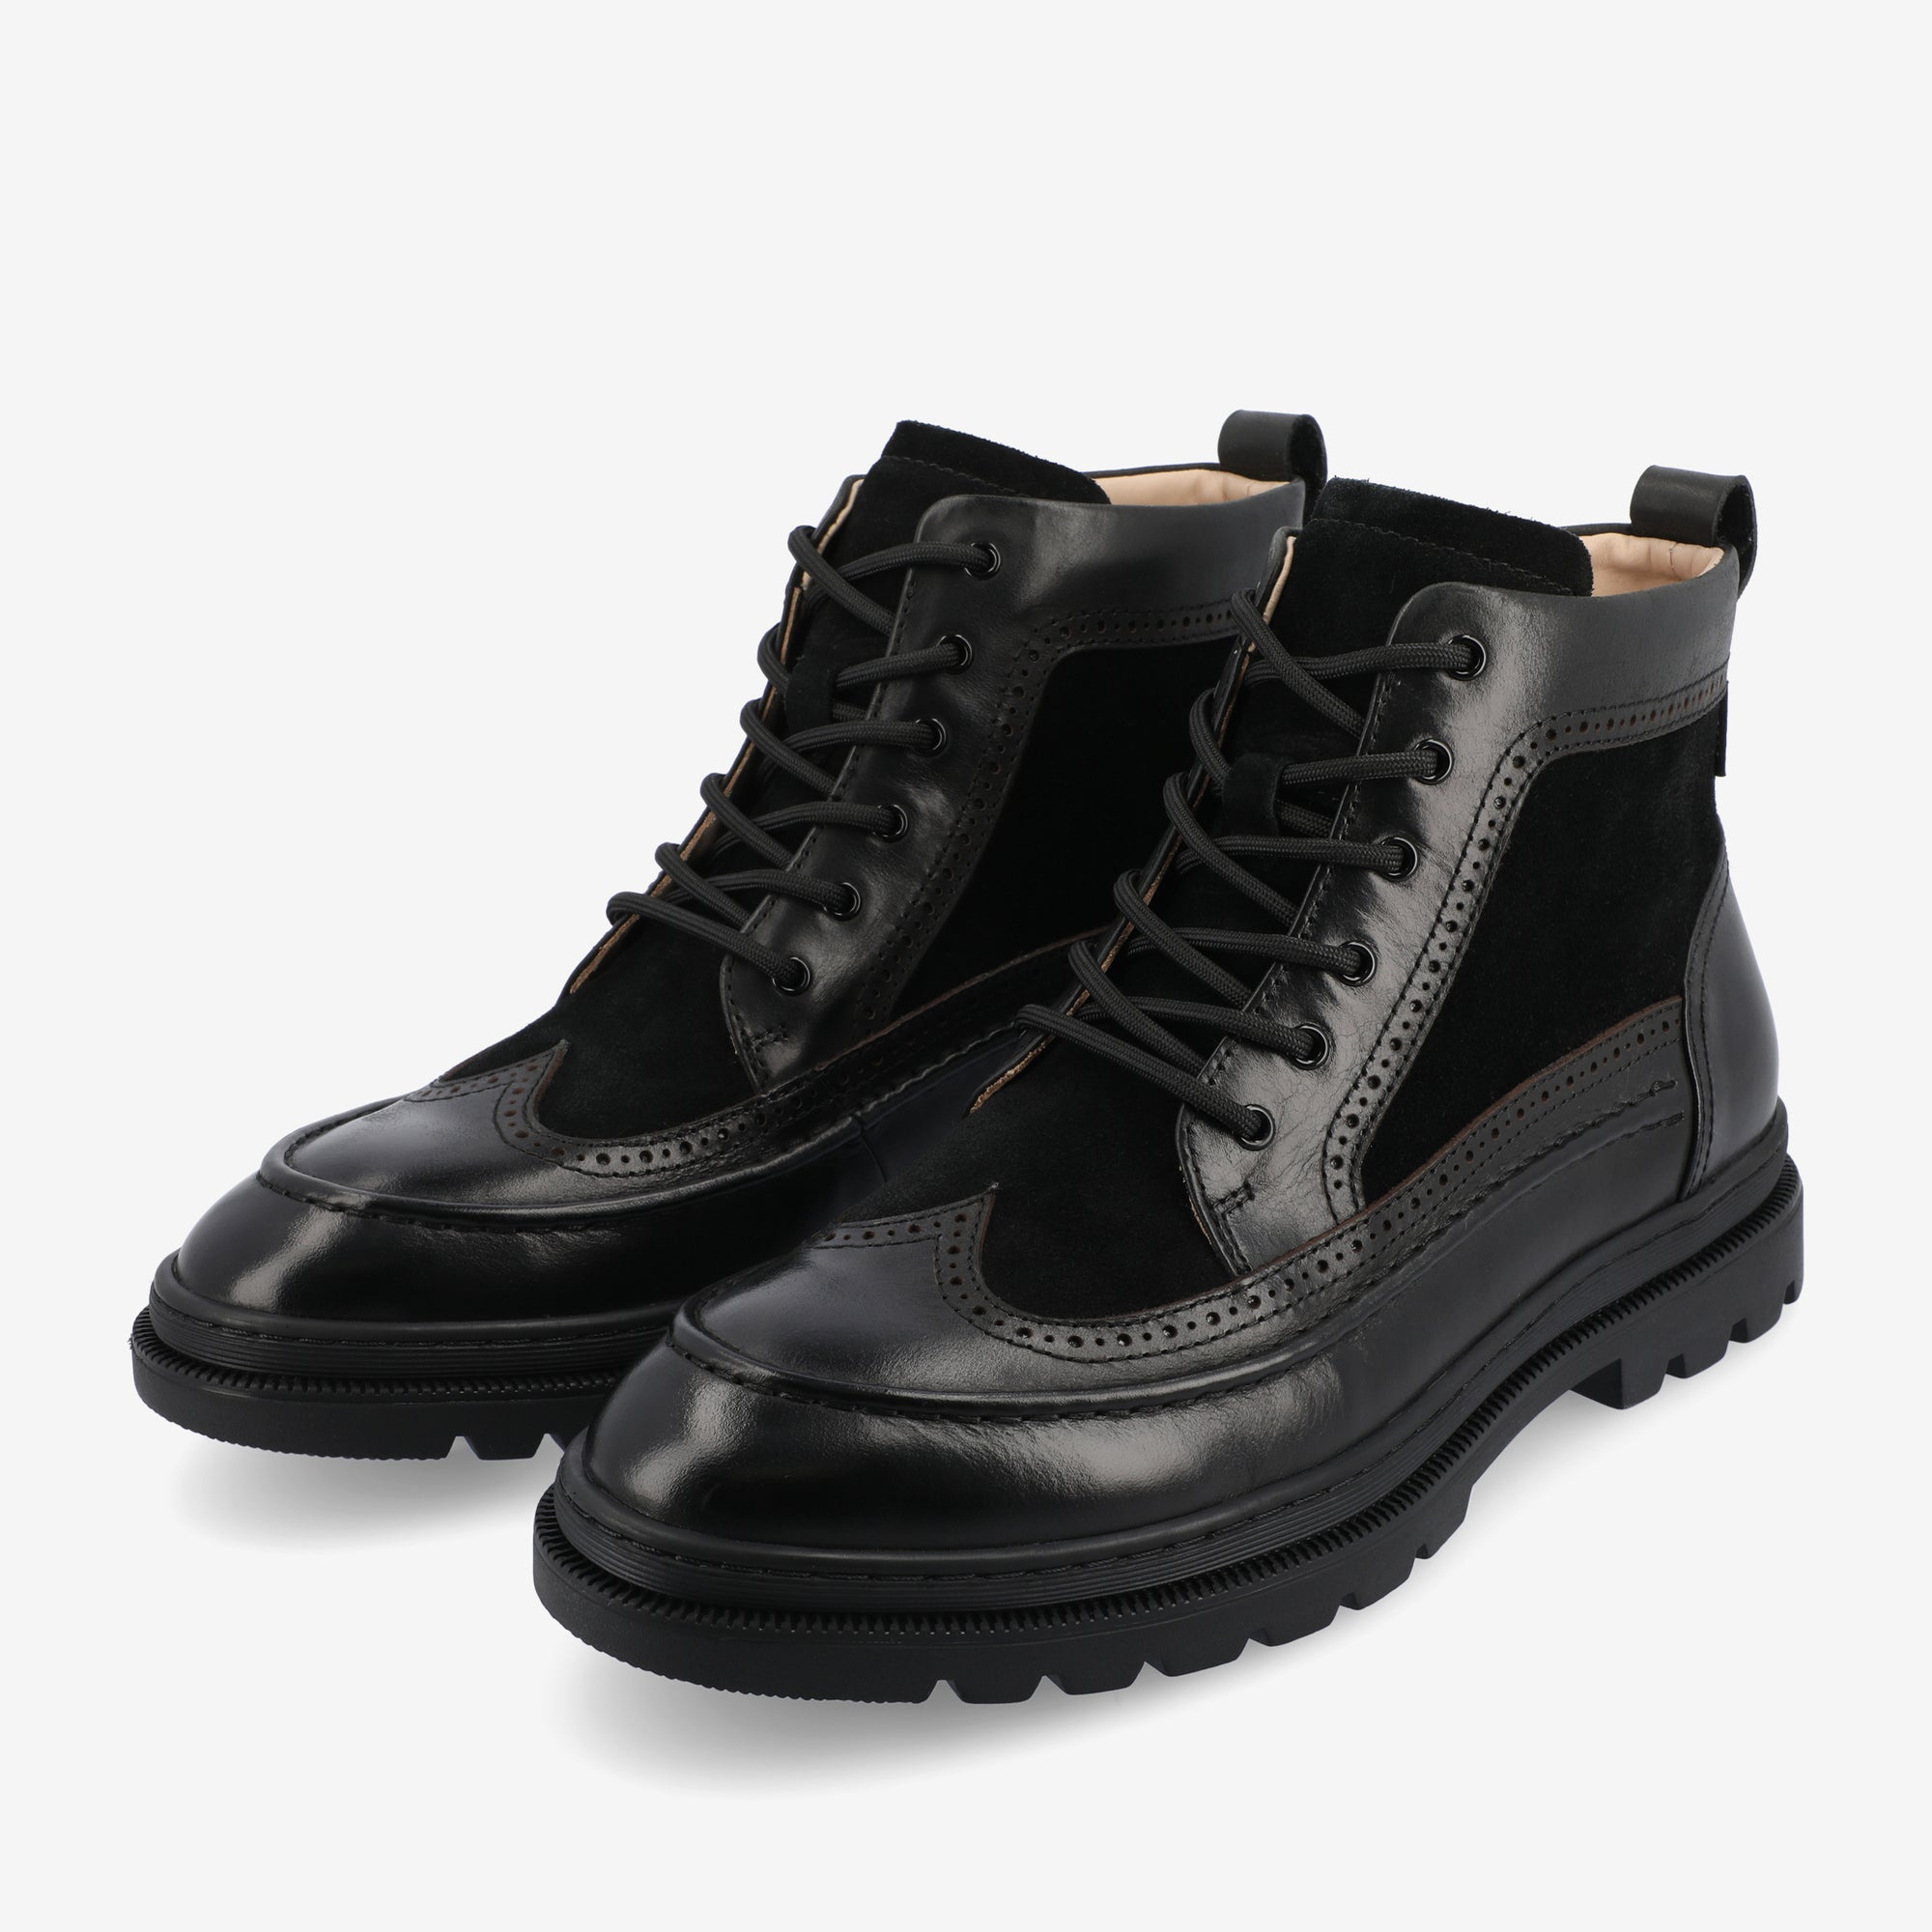 Model 008 Boot In Black